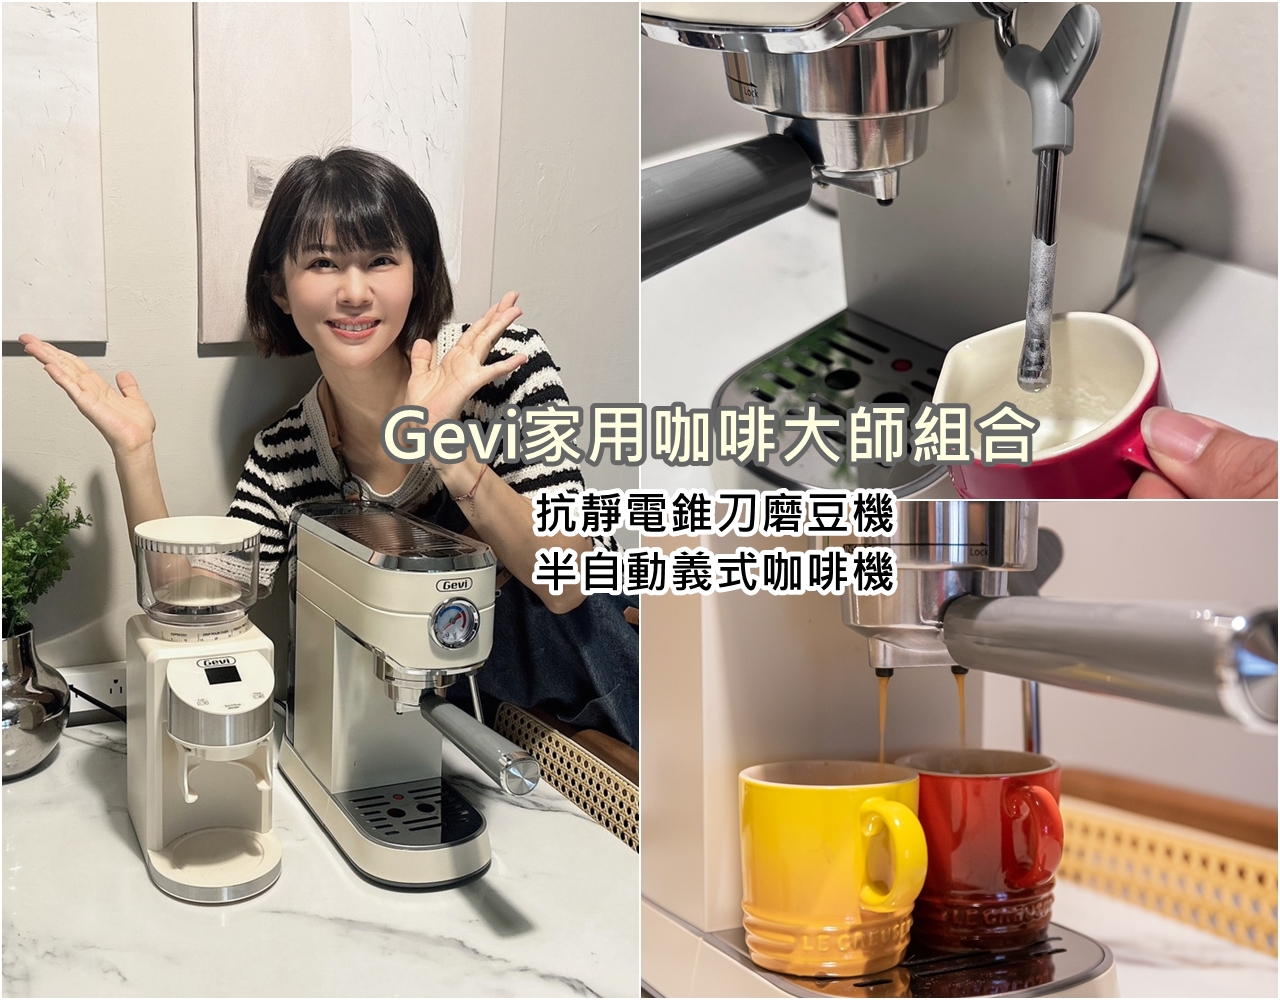 Gevi家用咖啡大師組合 磨豆、咖啡機一次擁有 品味美好咖啡時光就趁現在！